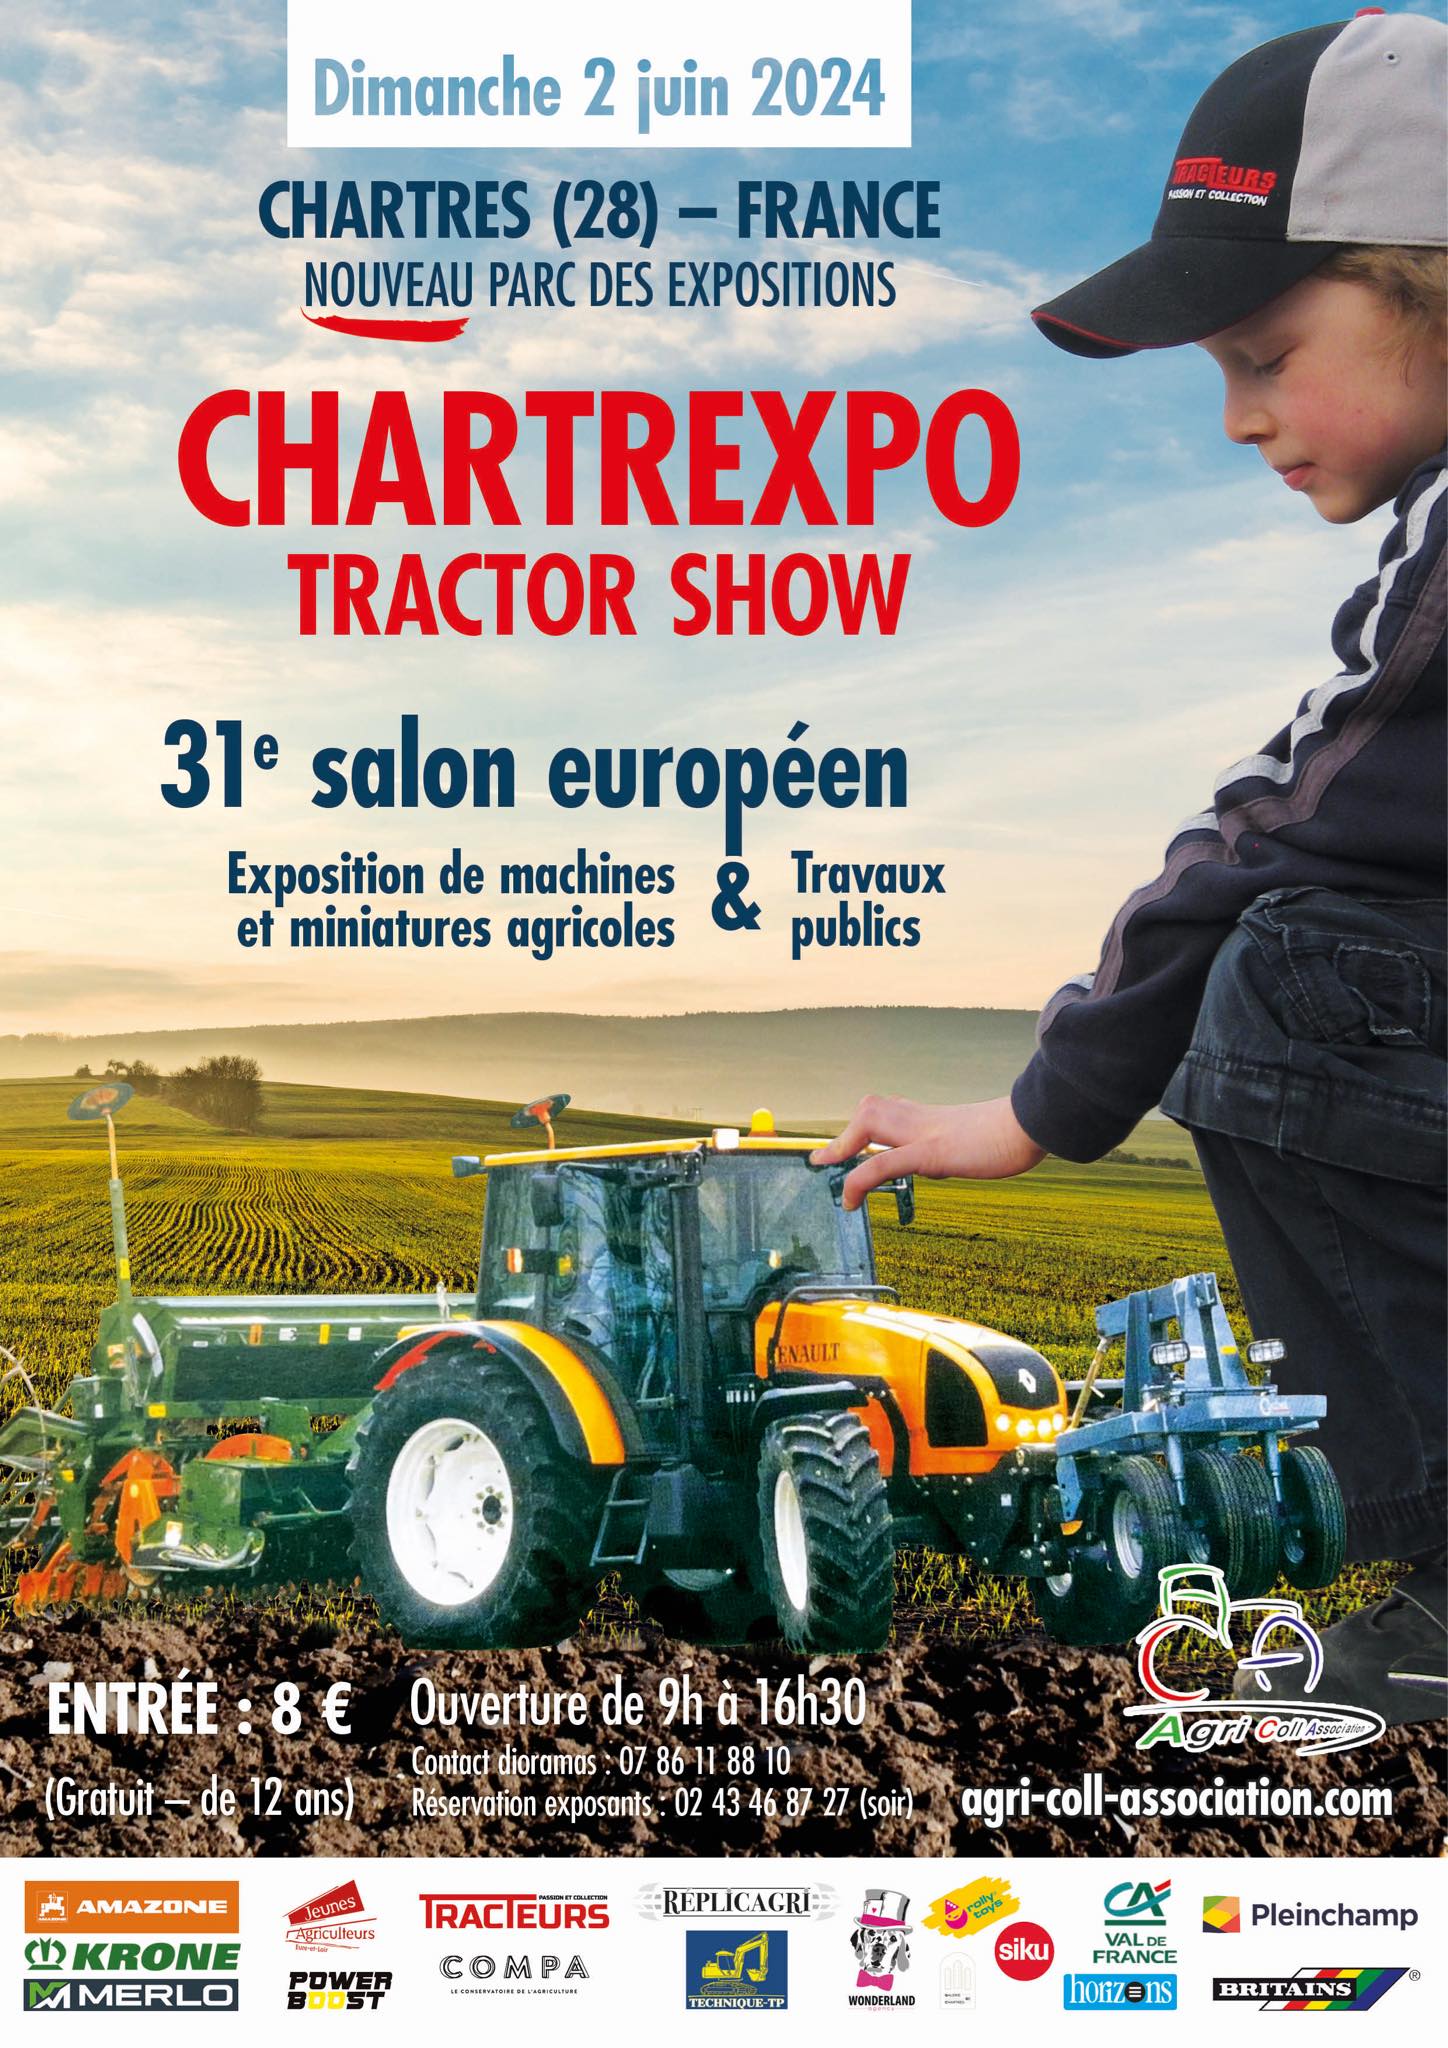 Exposition de miniatures agricoles & Travaux publics à Chartres (28) le Dimanche 2 Juin 2024